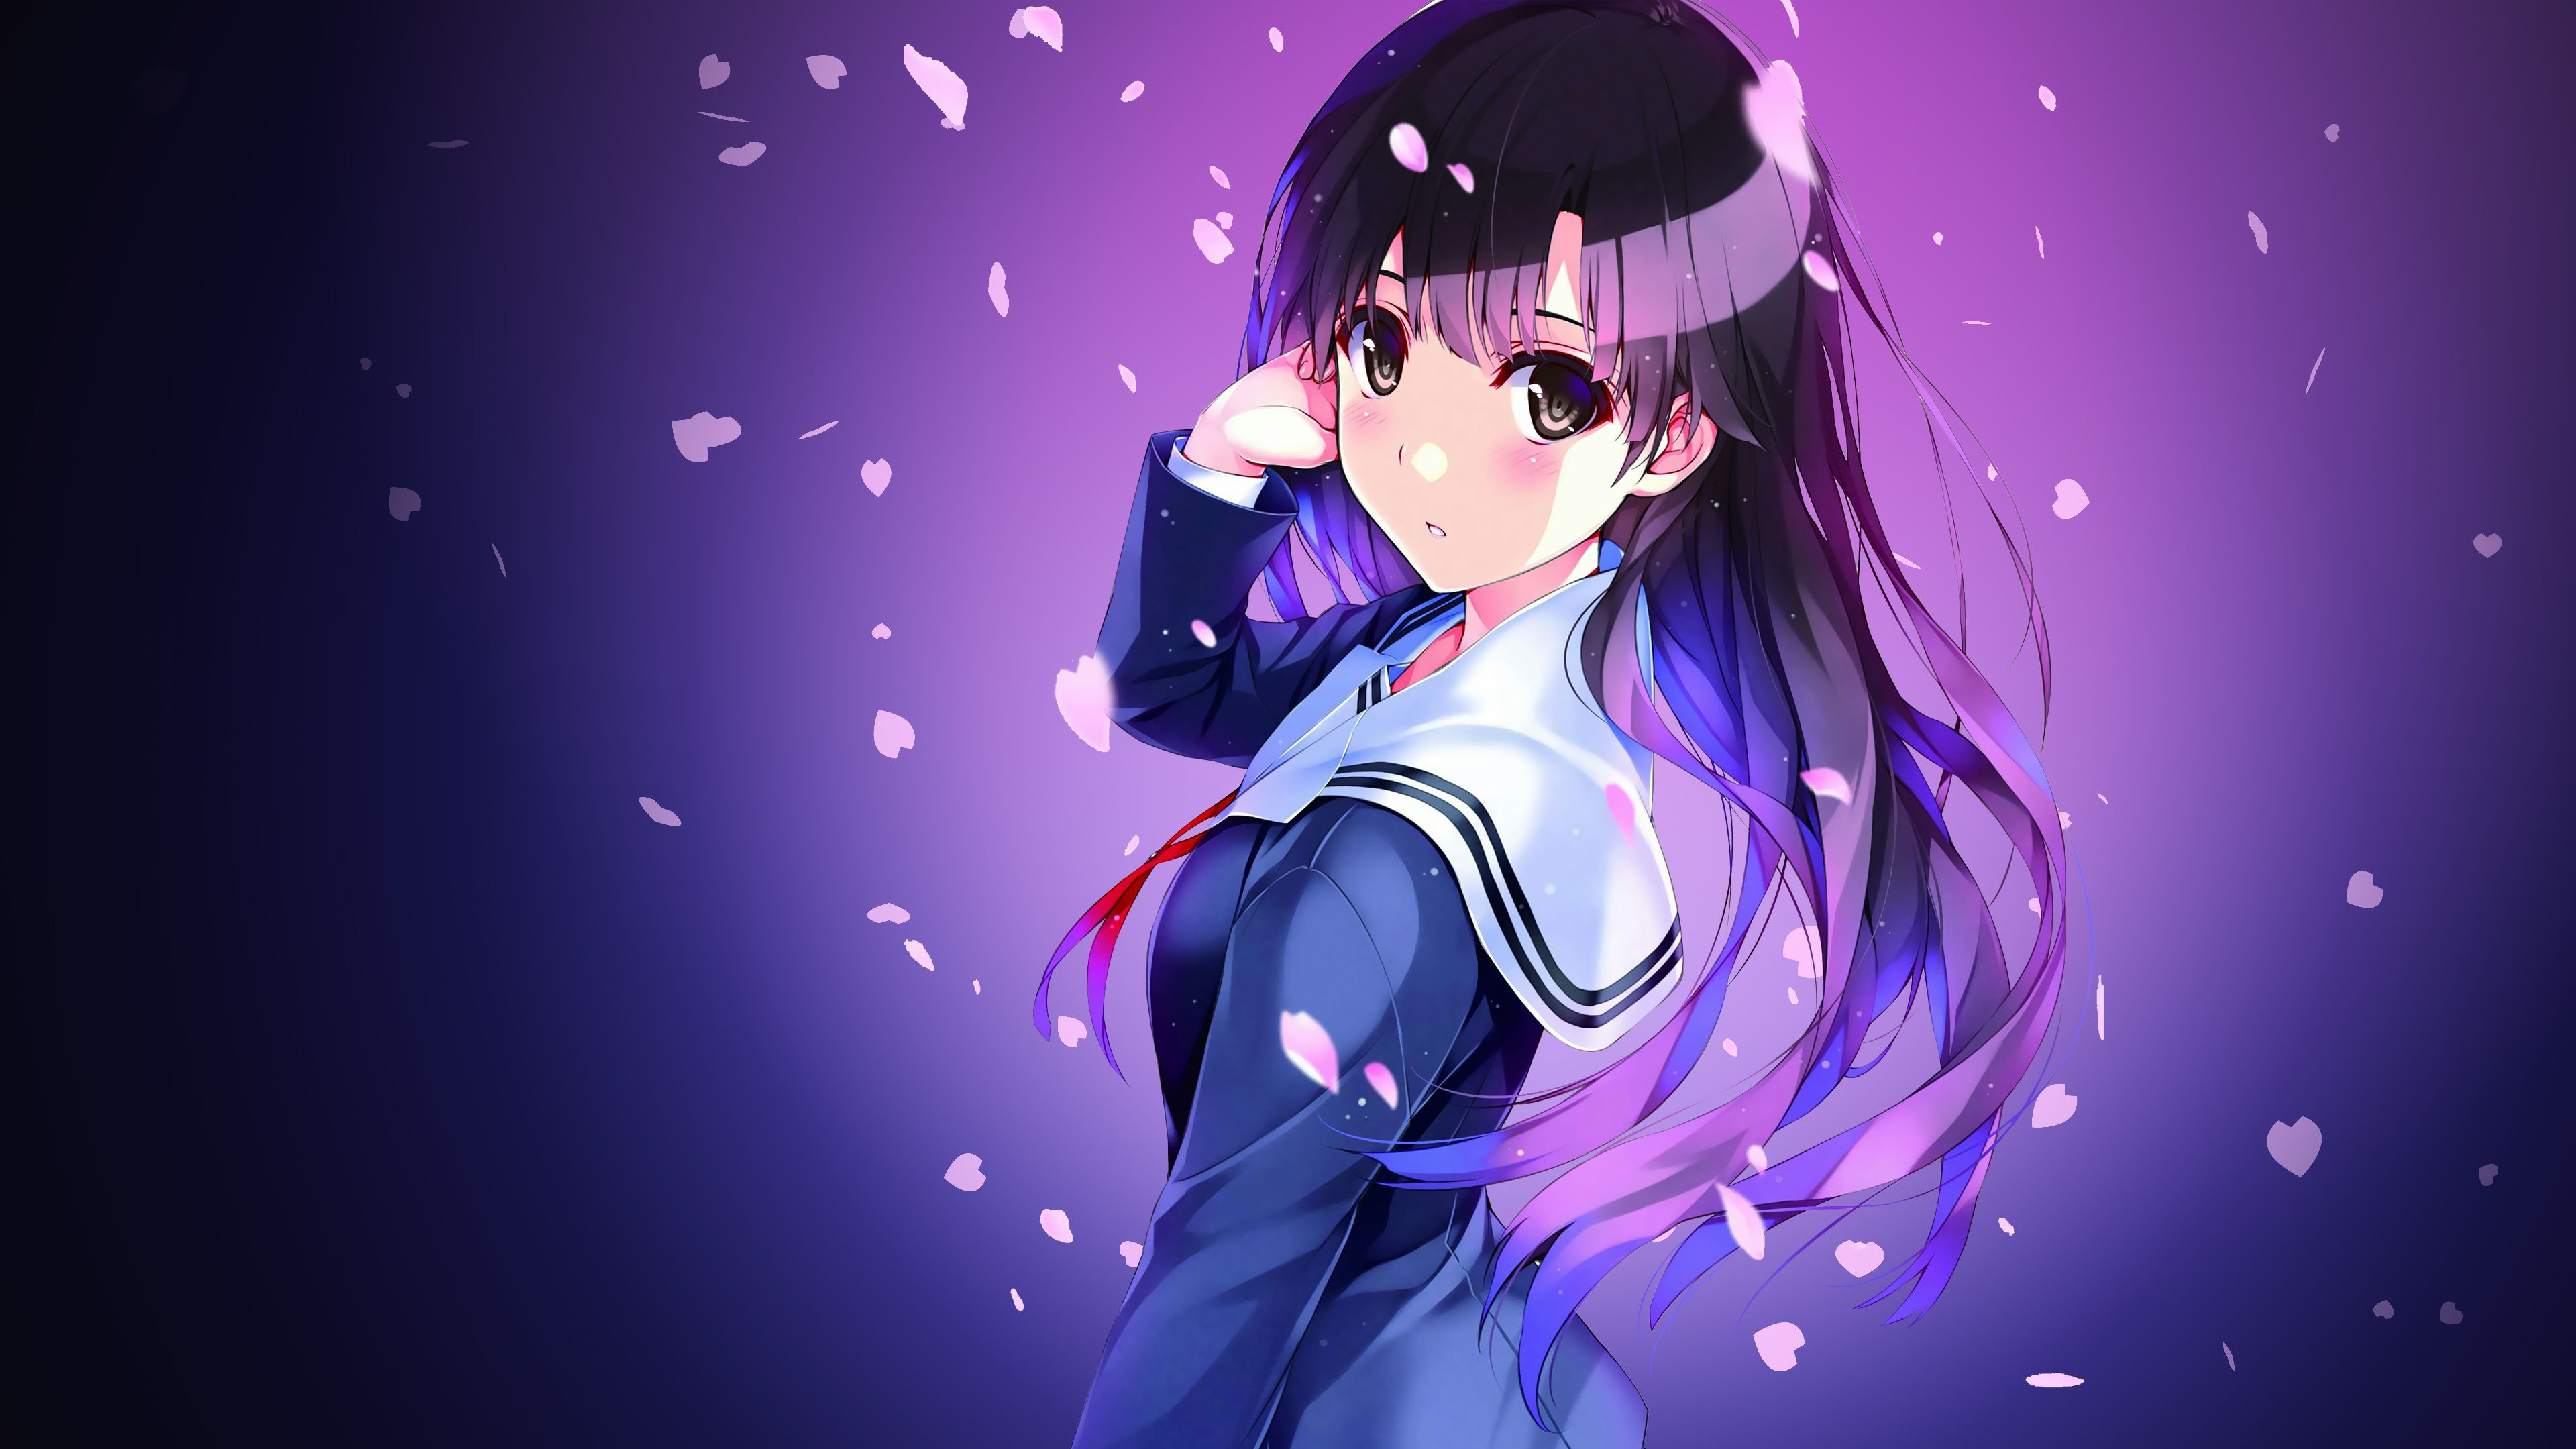 Cool Anime Girl Wallpapers on WallpaperDog